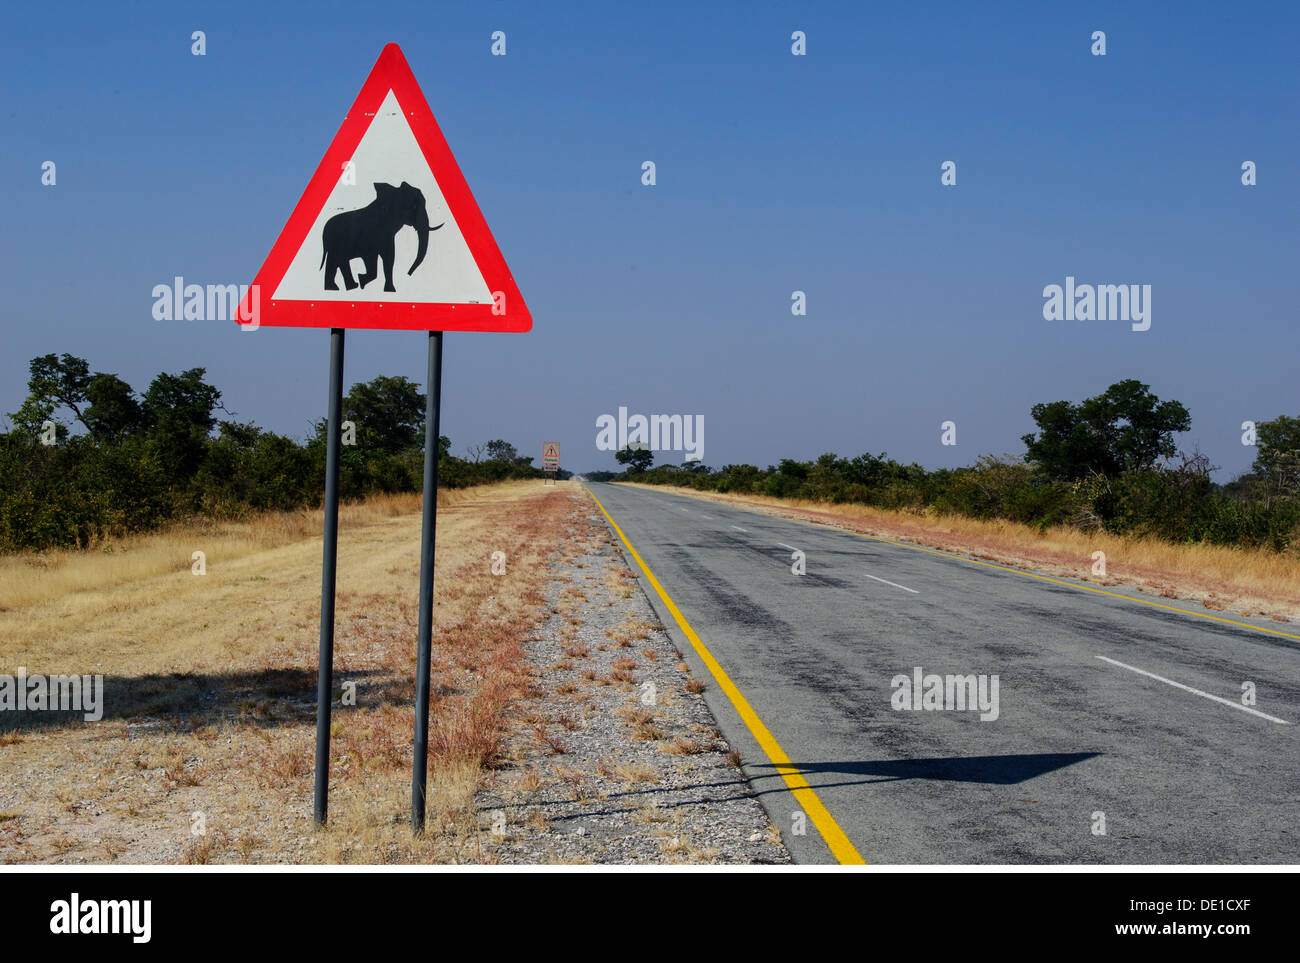 Trasporti / trasporto, cartello stradale, segno 'attenzione gli elefanti', sulla strada, Caprivi, Namibia, Additional-Rights-Clearance-Info-Not-Available Foto Stock